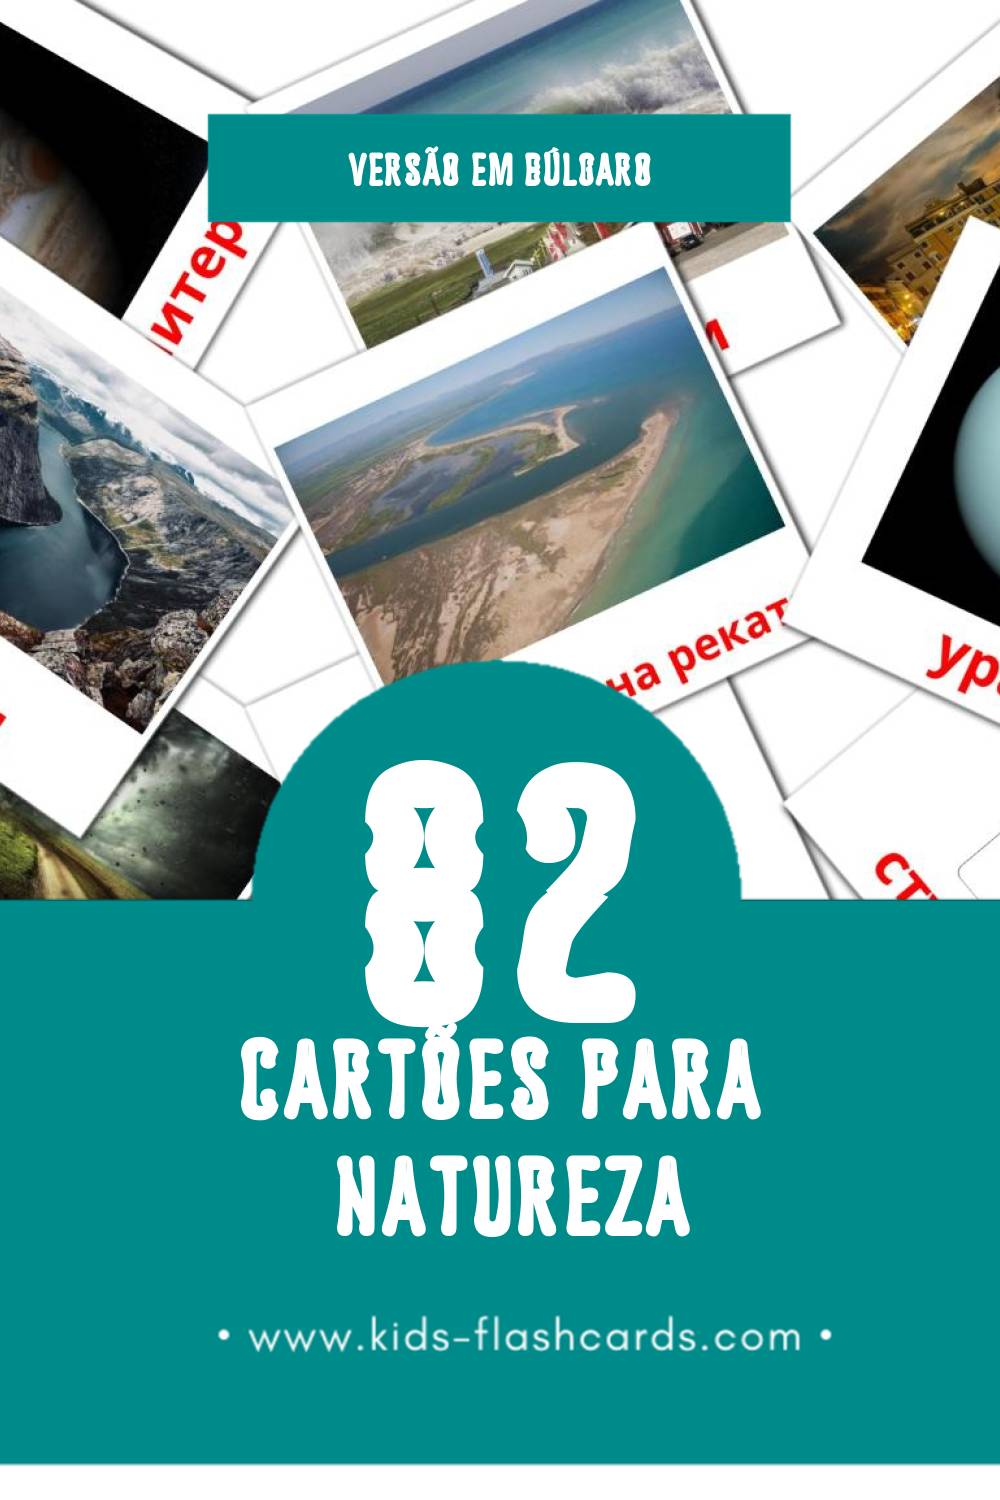 Flashcards de Природата Visuais para Toddlers (82 cartões em Búlgaro)